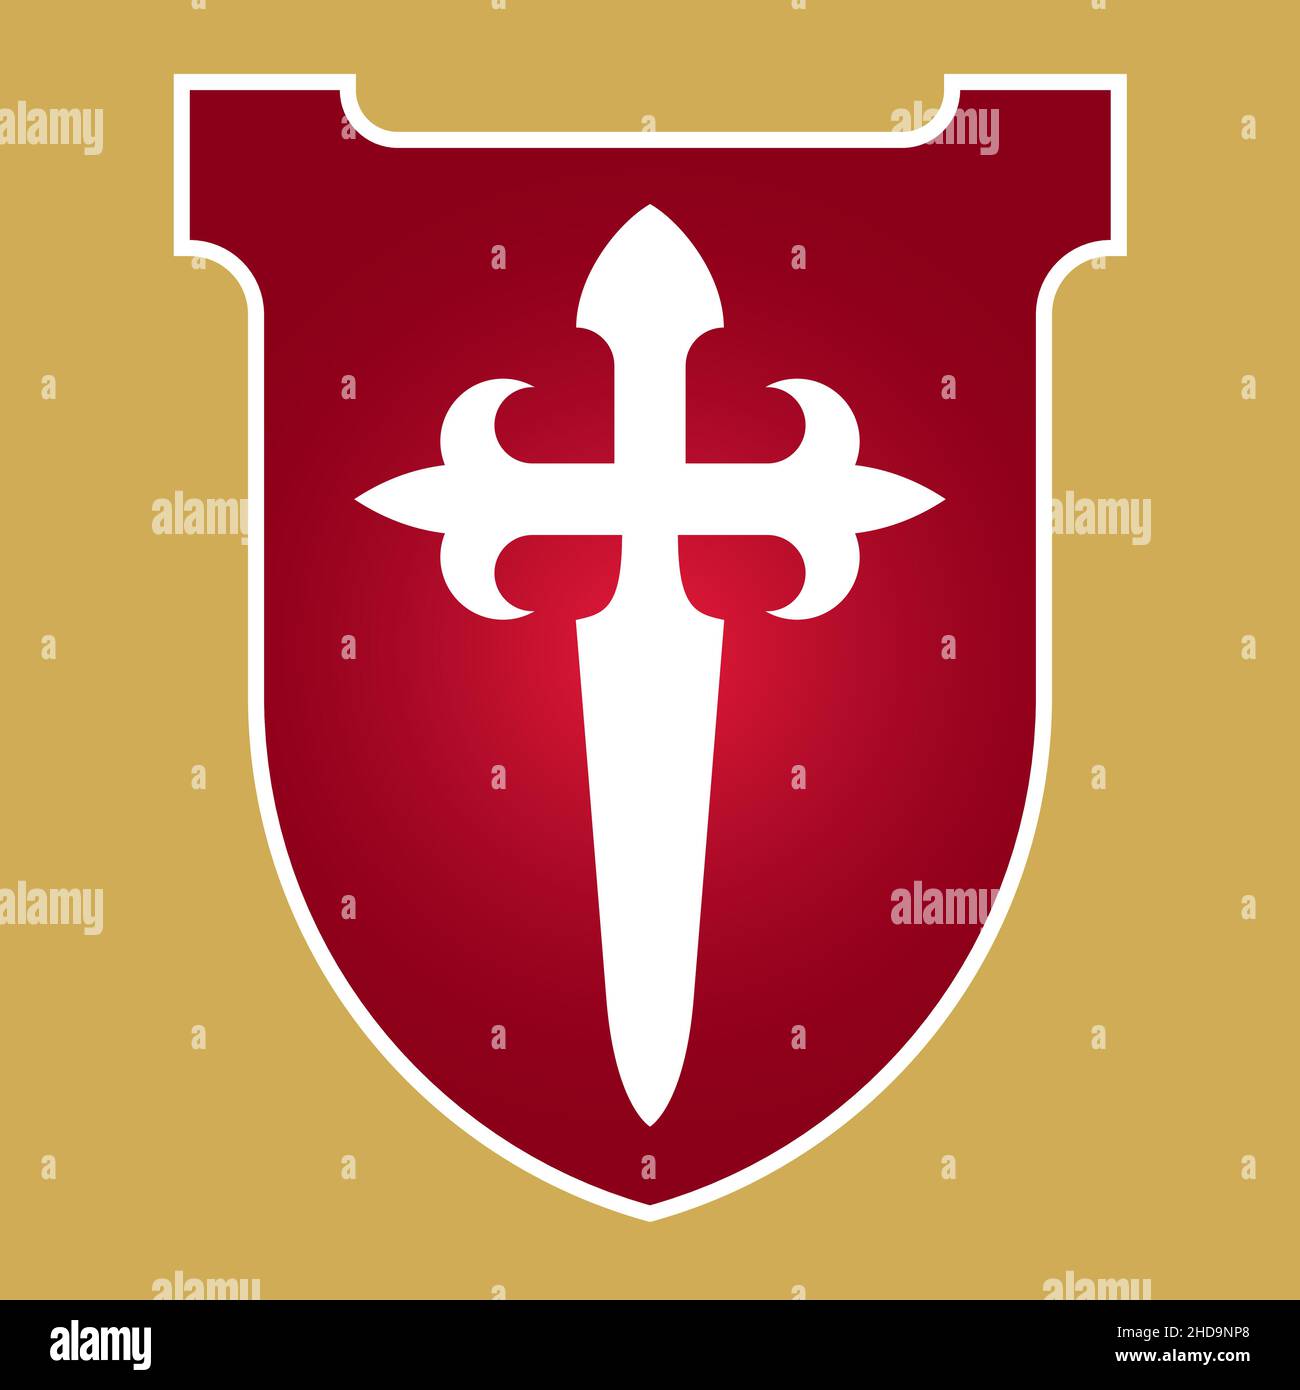 Croce di San Giacomo Cristiano badge o logo design. Illustrazione vettoriale della croce di San Giacomo che forma un pugnale o una spada. Illustrazione Vettoriale